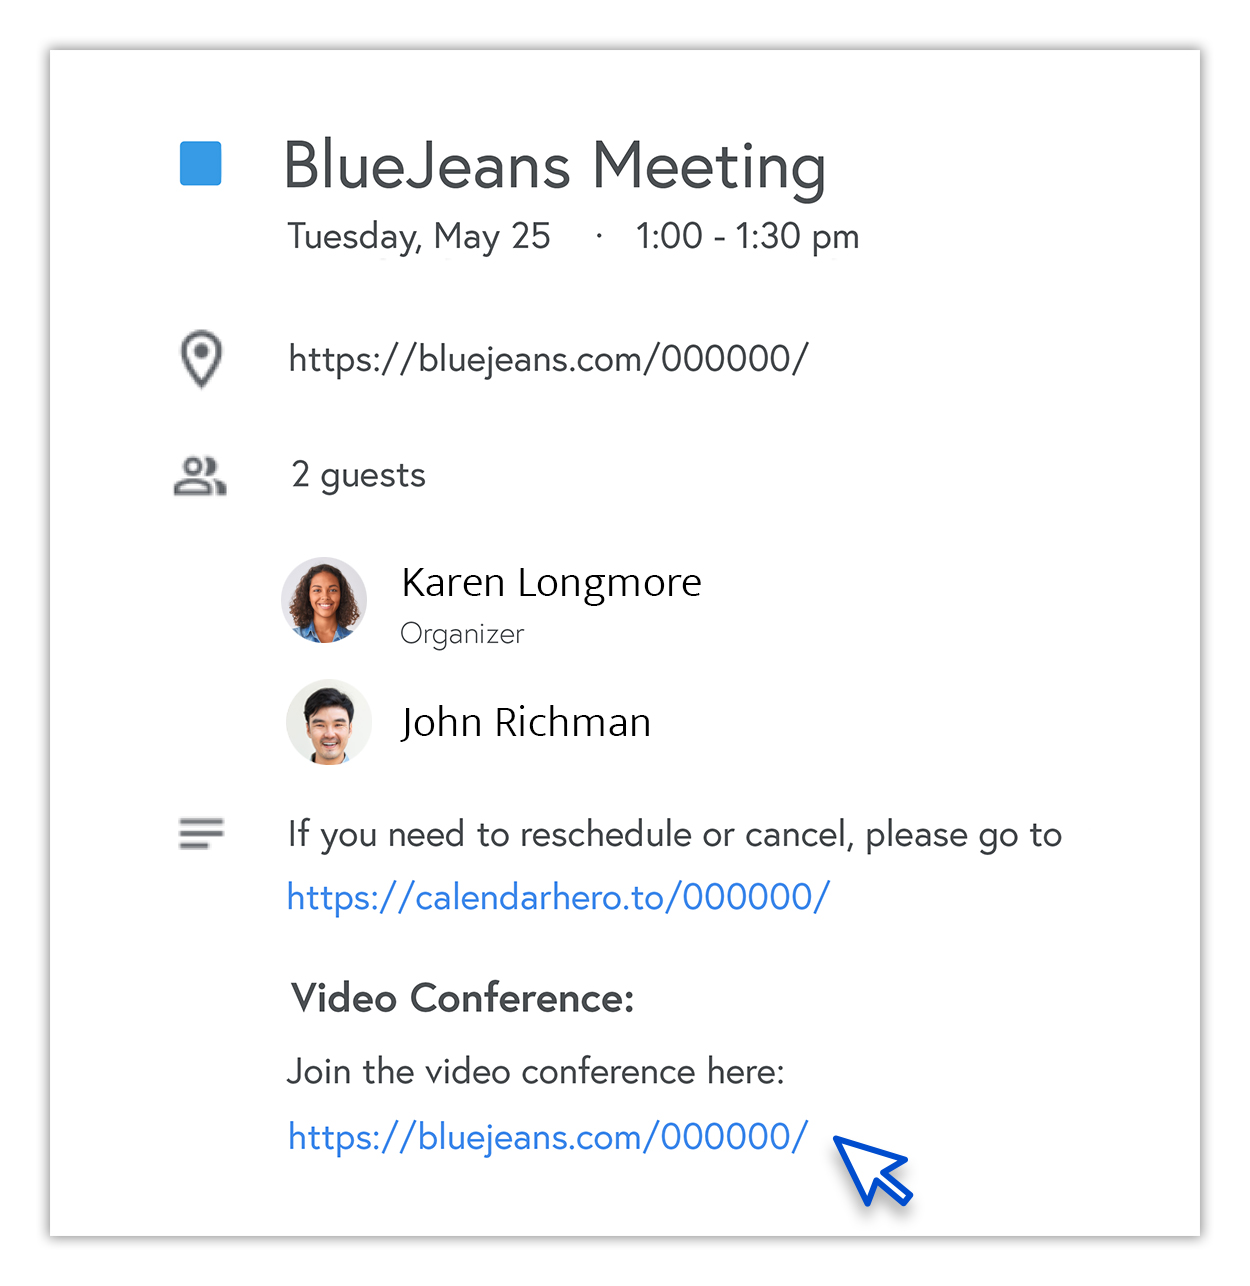 BlueJeans Meeting Details